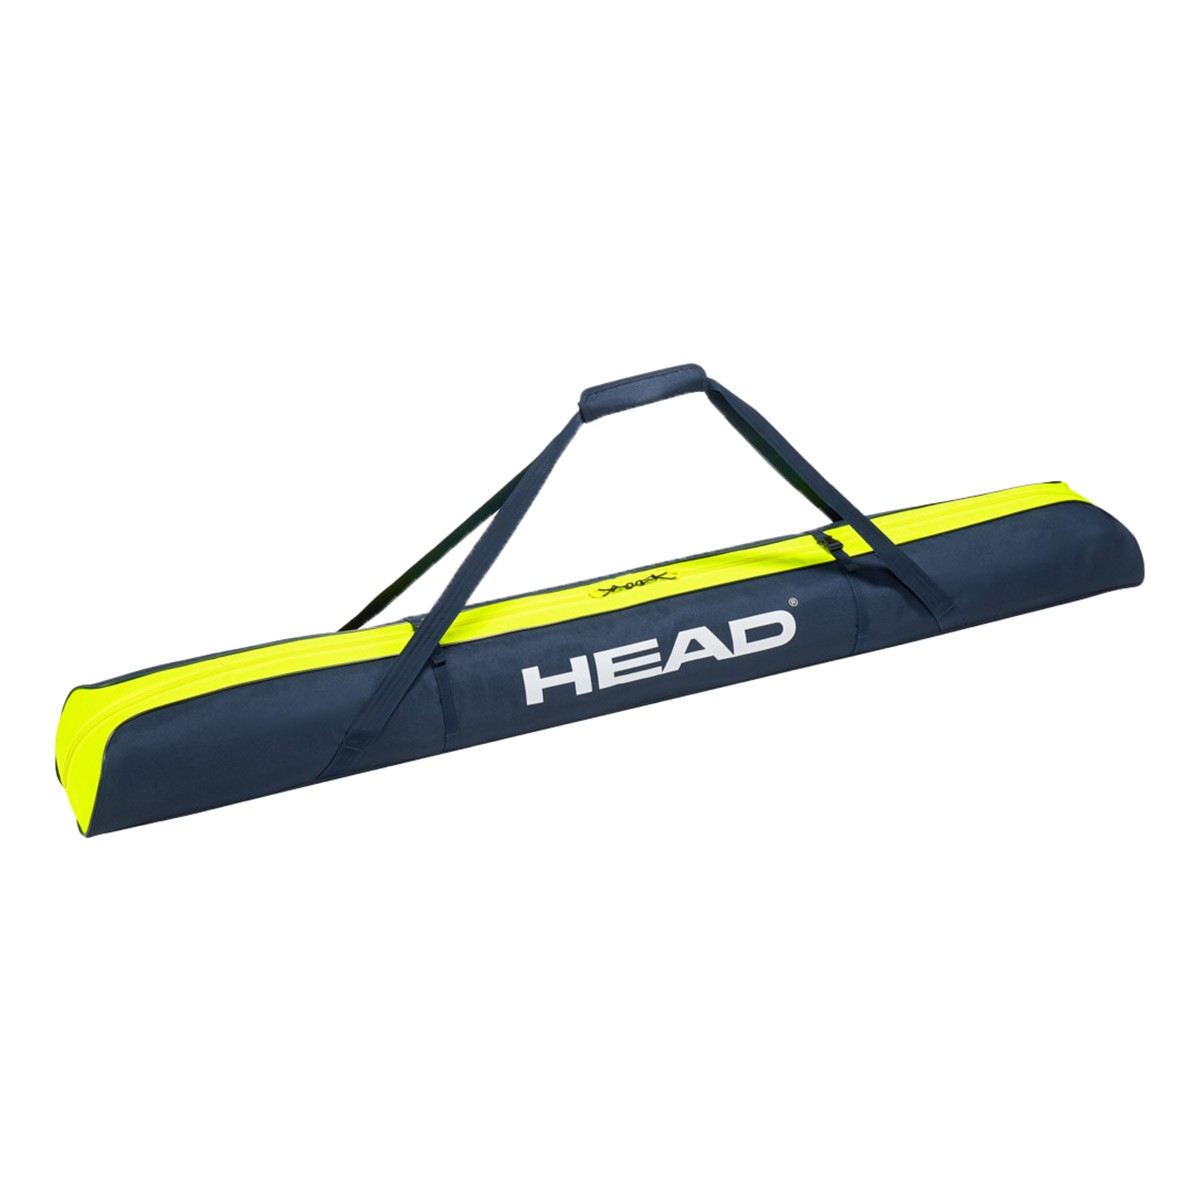  Sacca porta sci Head Single Ski Bag 175 (Colore: nero giallo, Taglia: 175) 